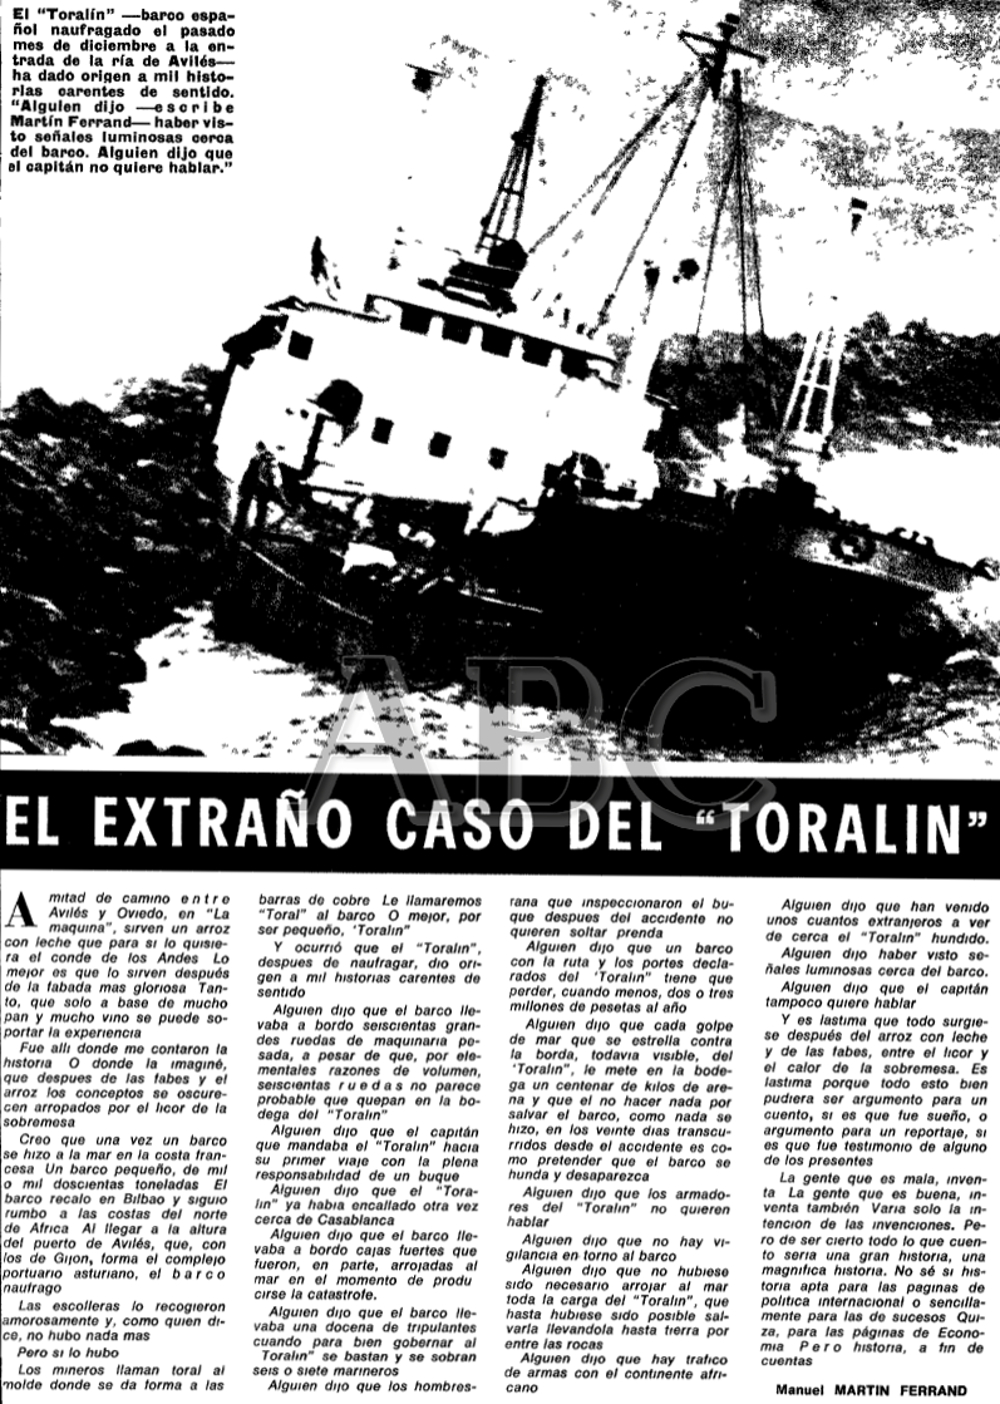 Toralin - Colección de L. Santa Olaya